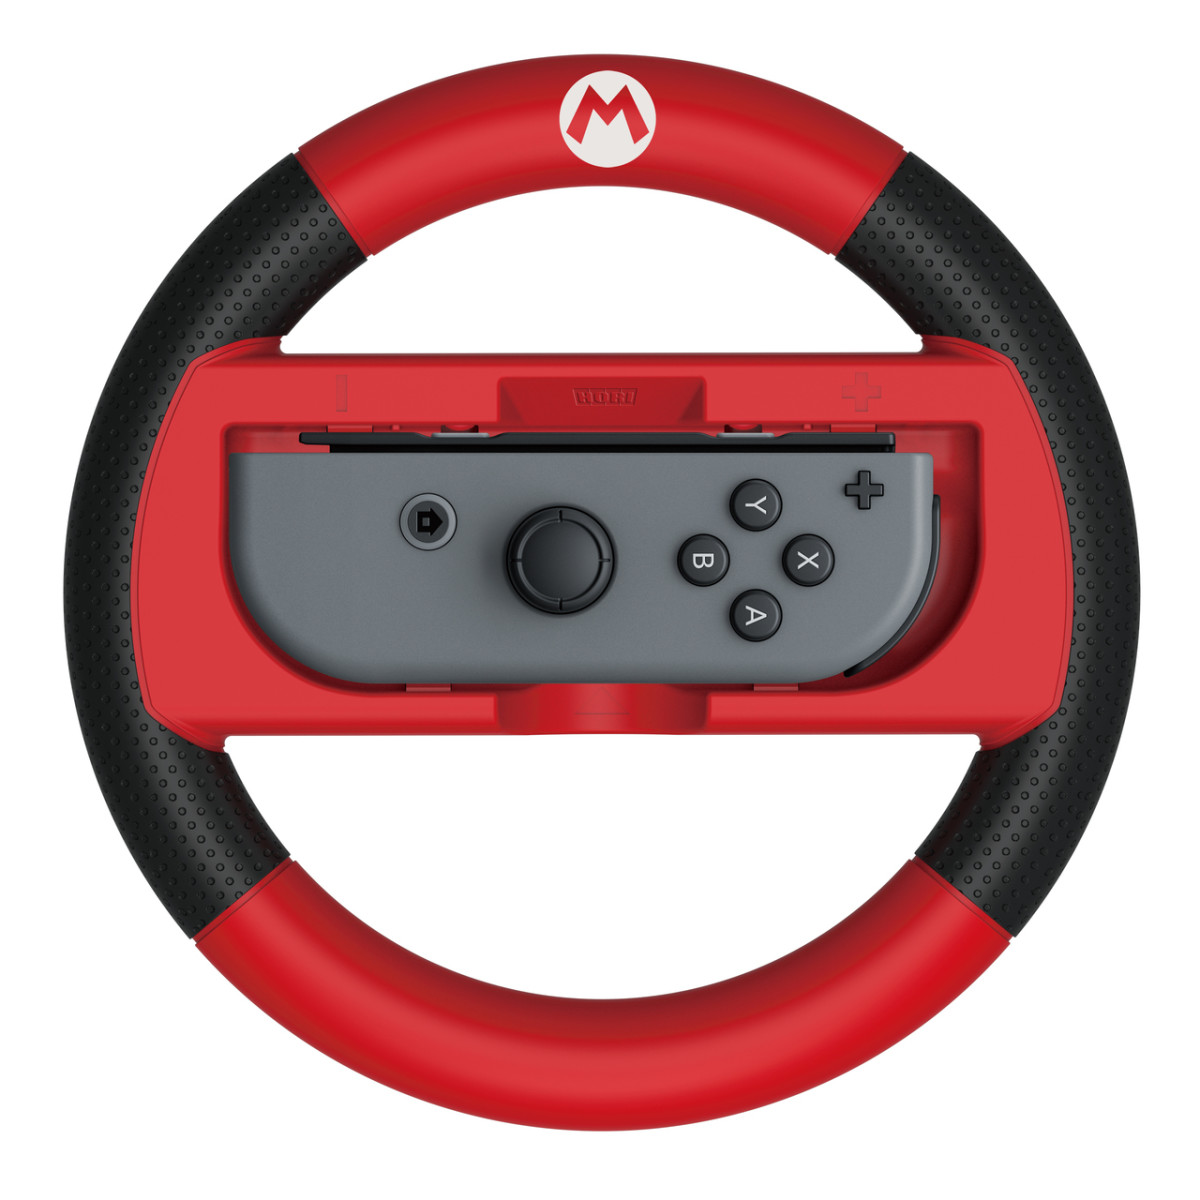 MK8 Deluxe Racing Wheel Mario